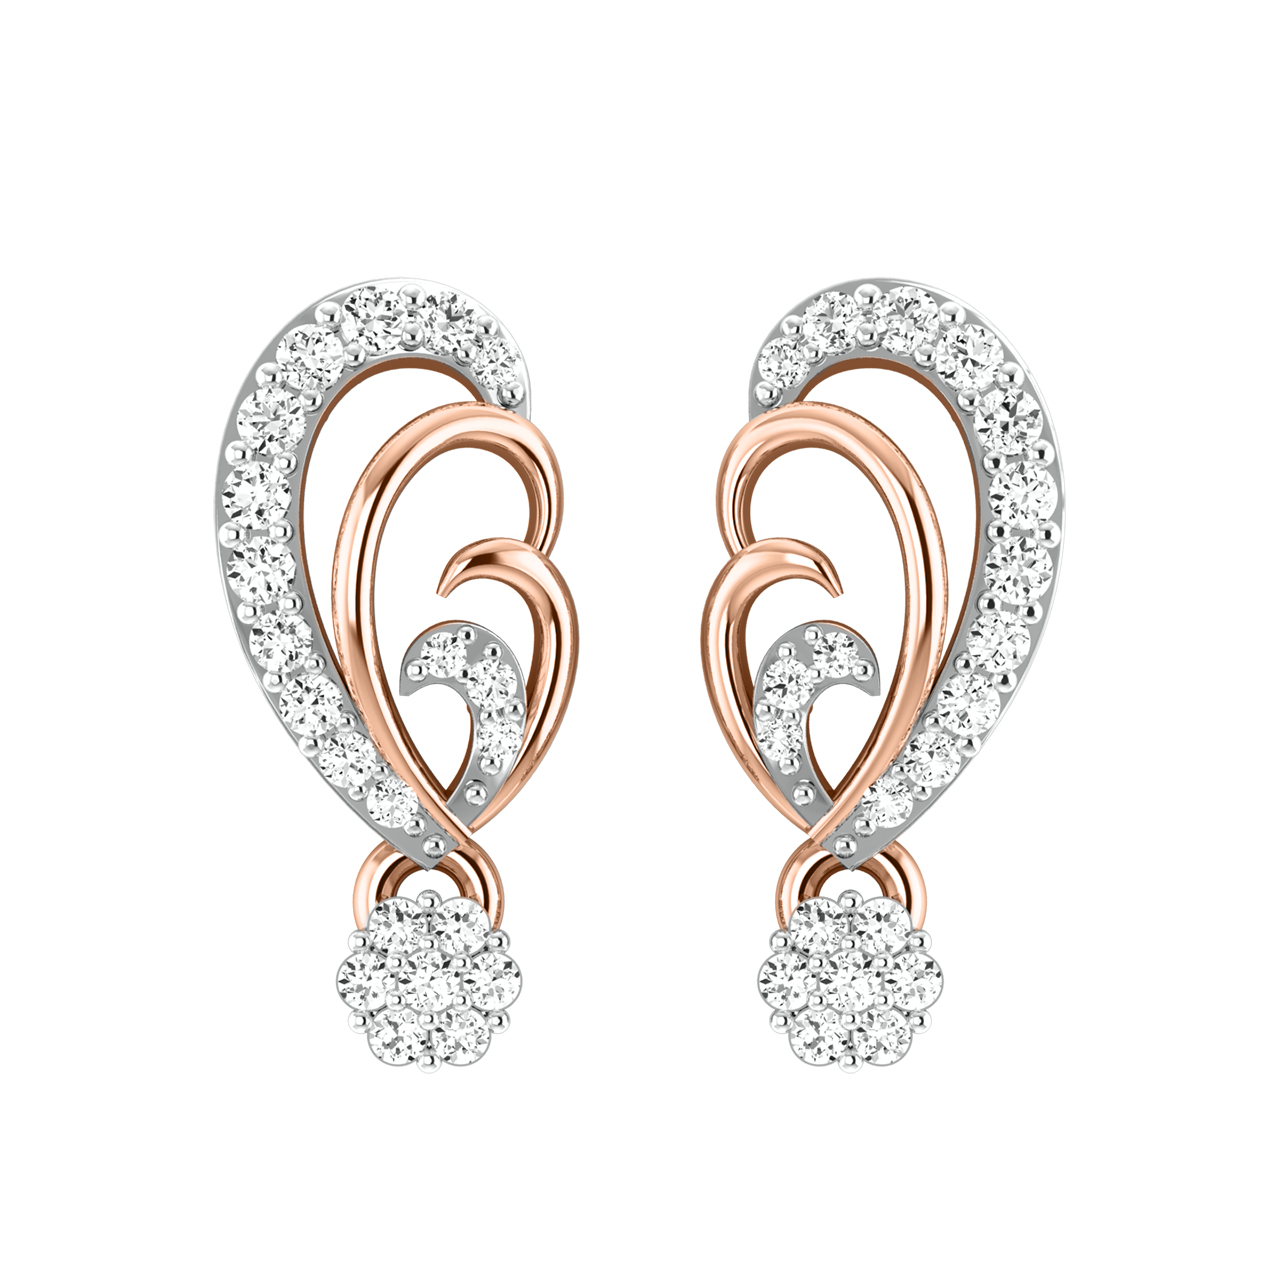 Wren Diamond Stud Earrings For Her